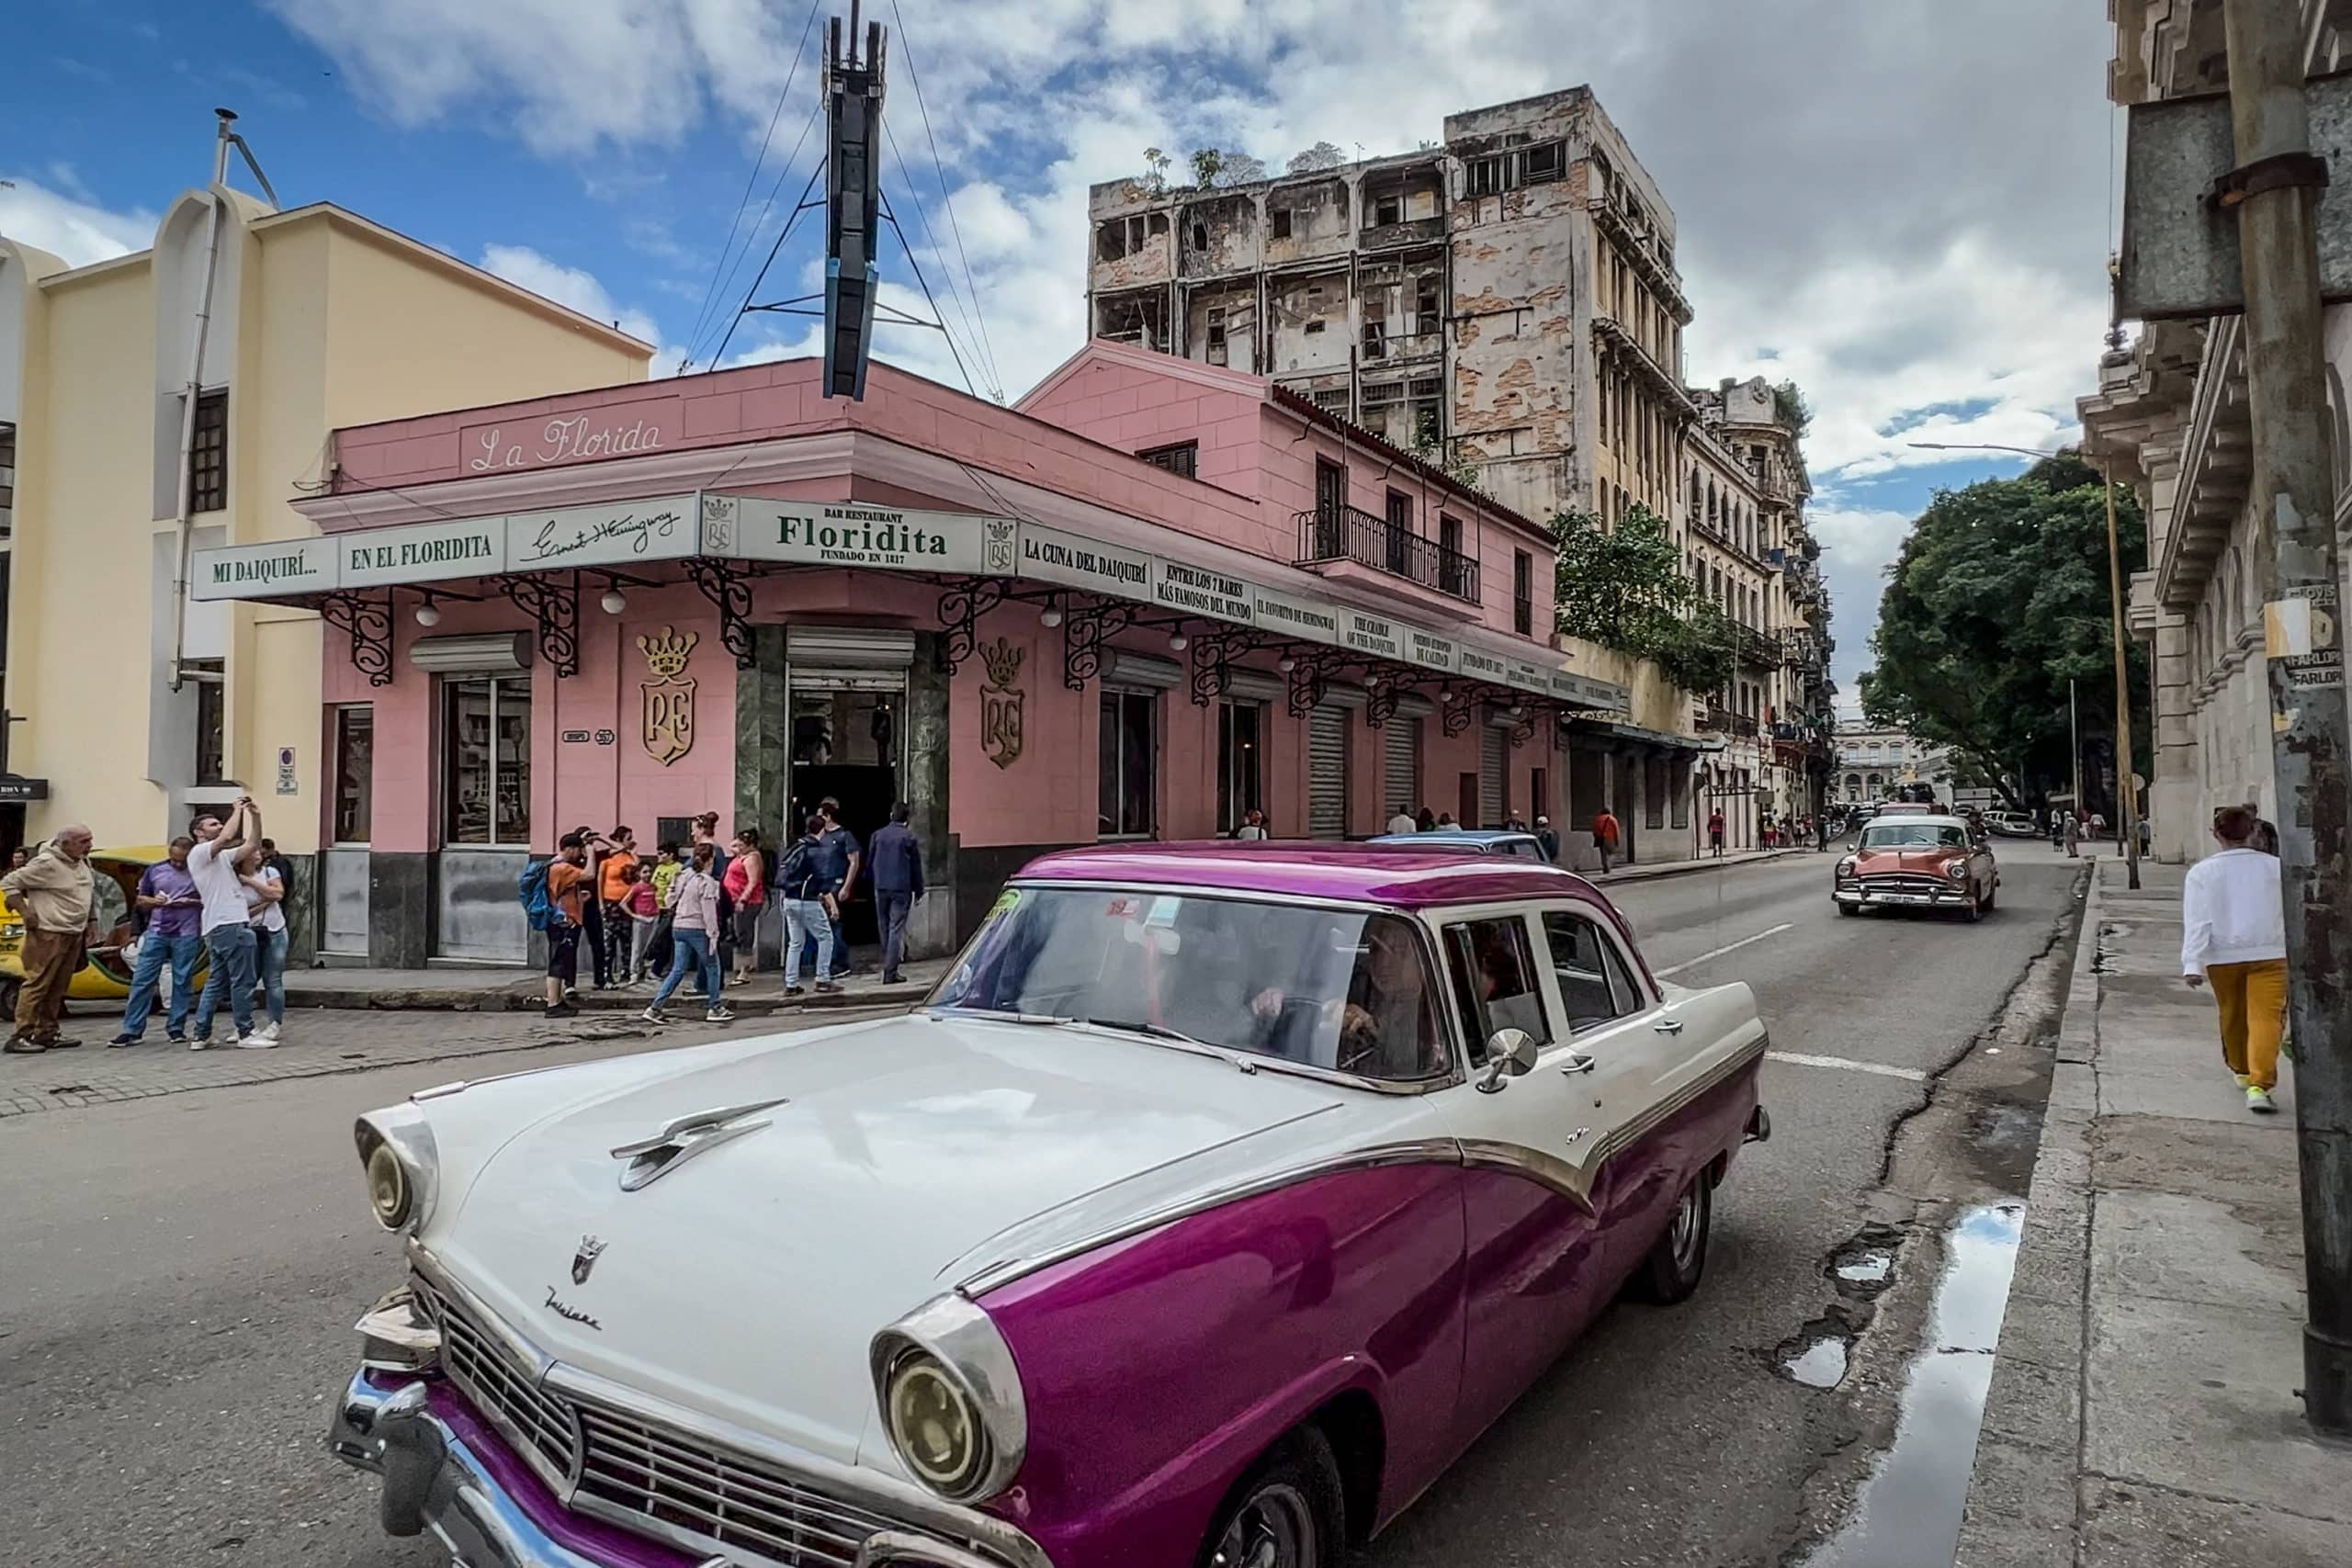 “La Floridita”, el famoso bar cubano que cumple 100 años y es la casa del Daiquirí